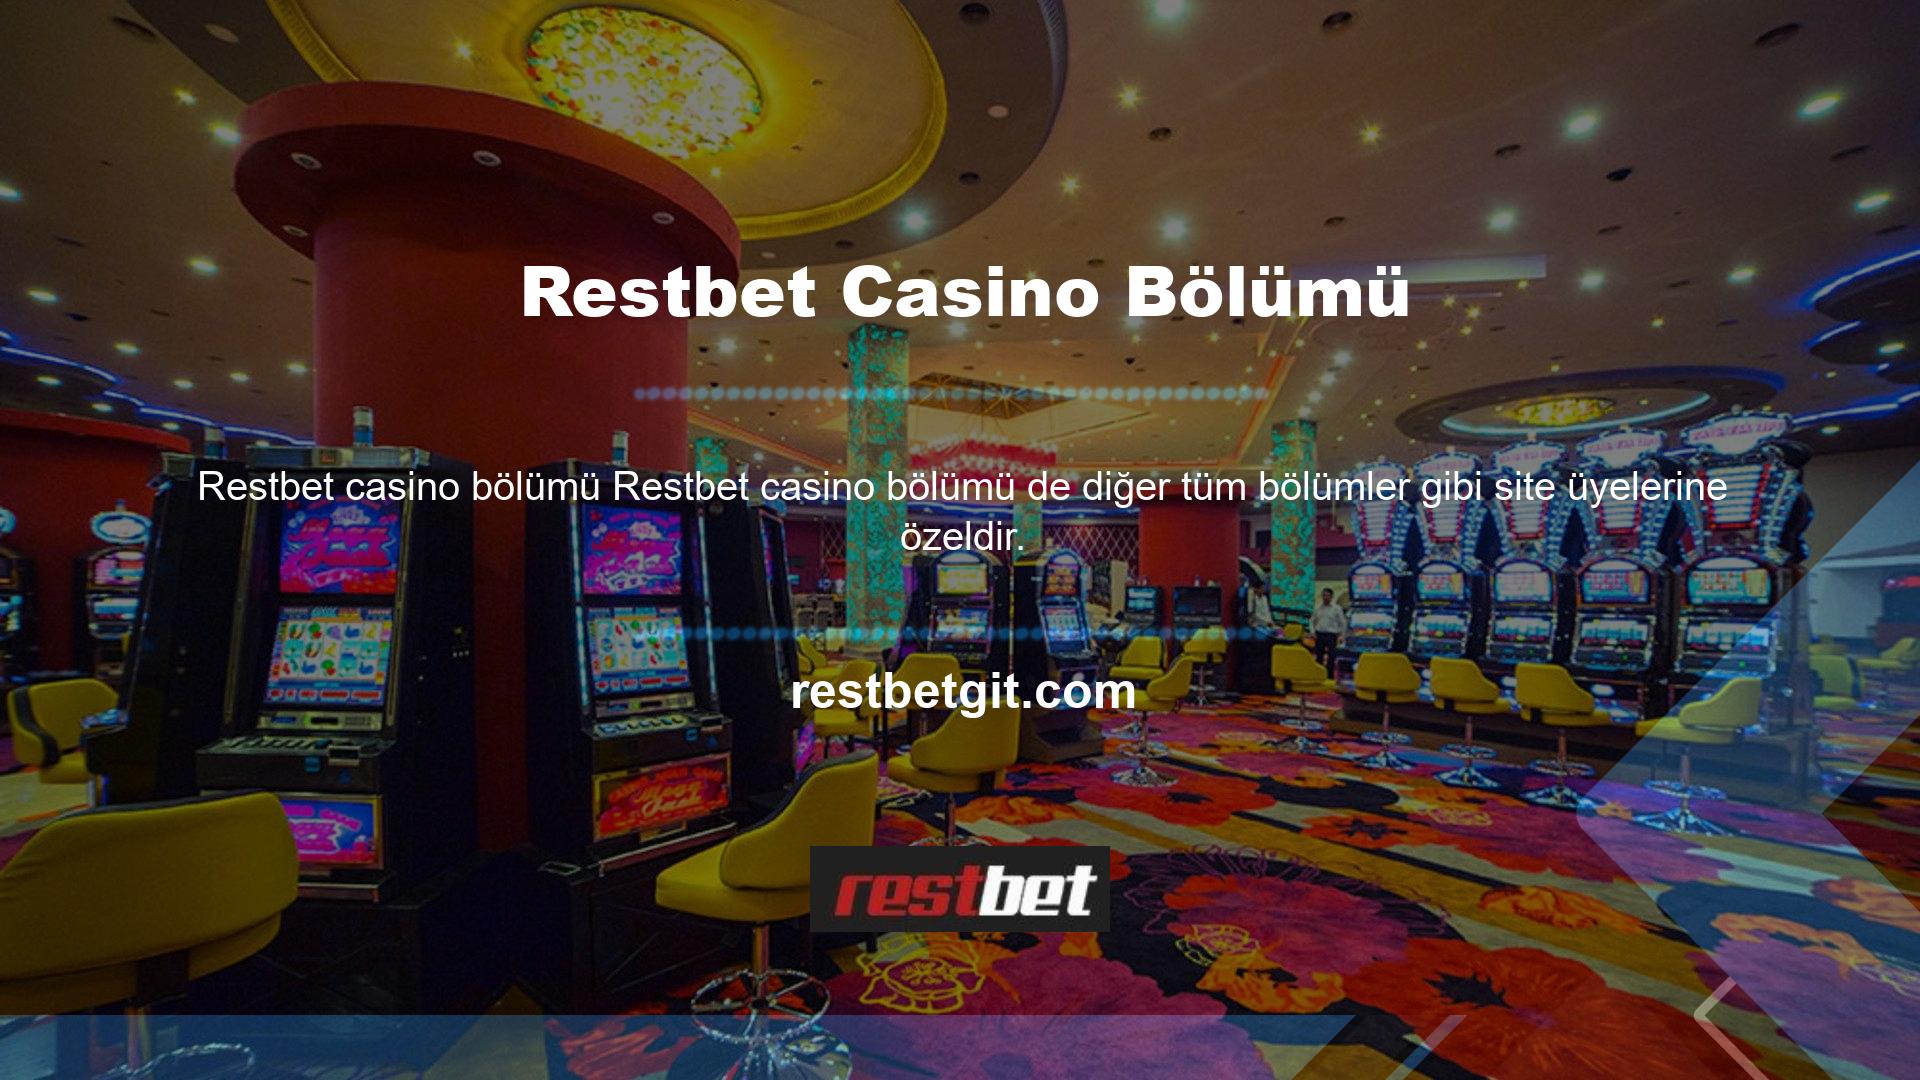 Casino tutkunlarının Restbet Casino'nun keyfini çıkarabilmeleri için sitemize kayıt olmaları gerekmektedir